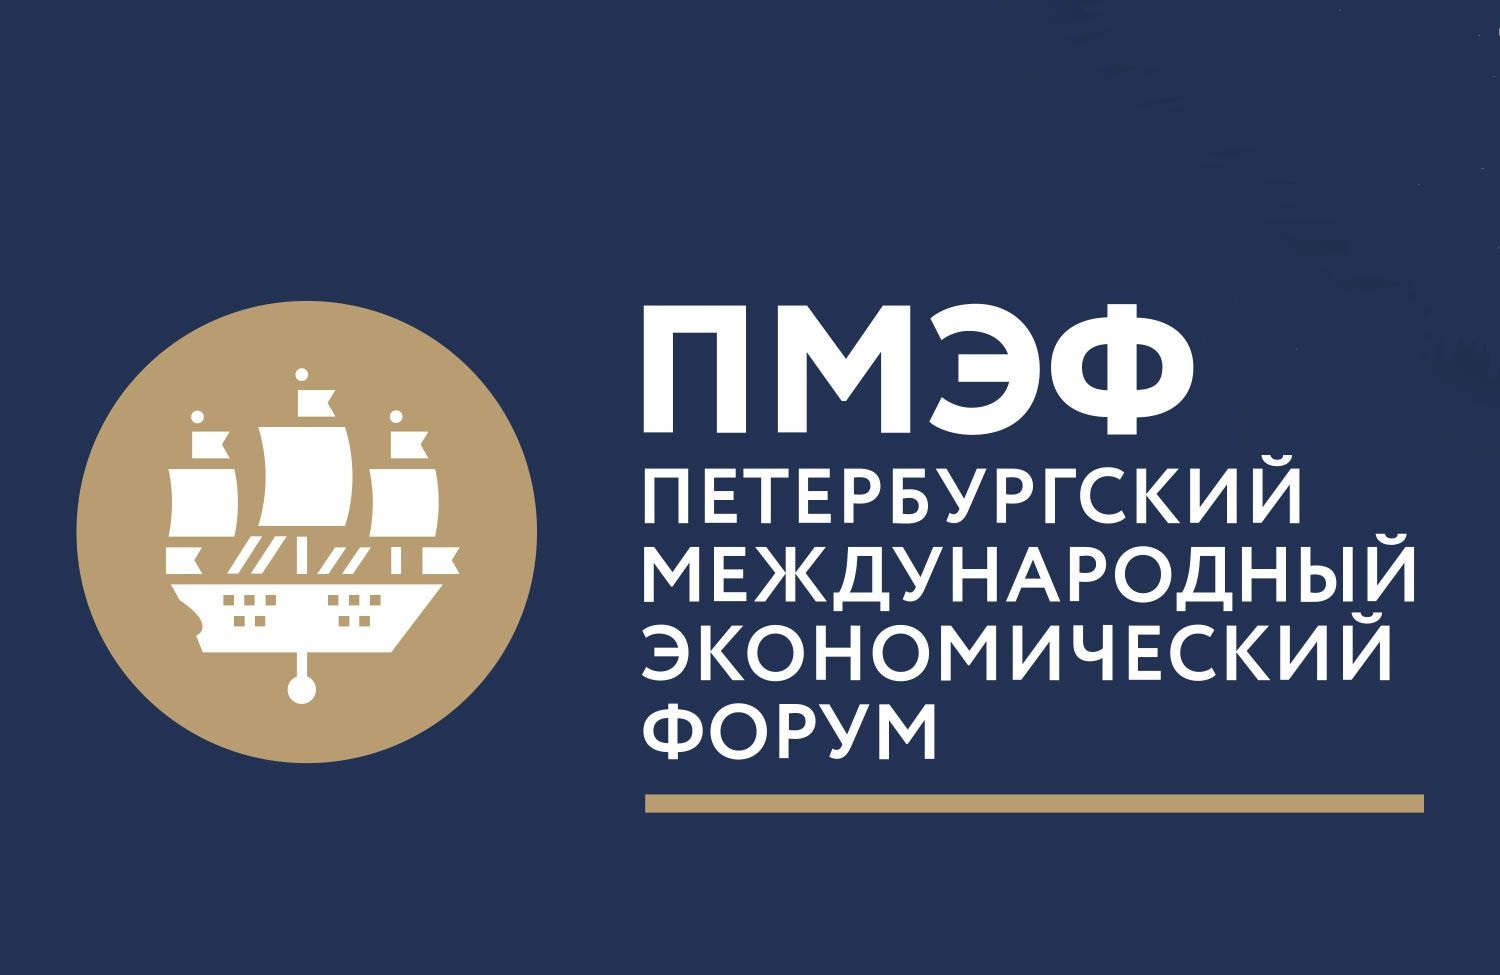 В июне состоится 27-й Петербургский международный экономический форум